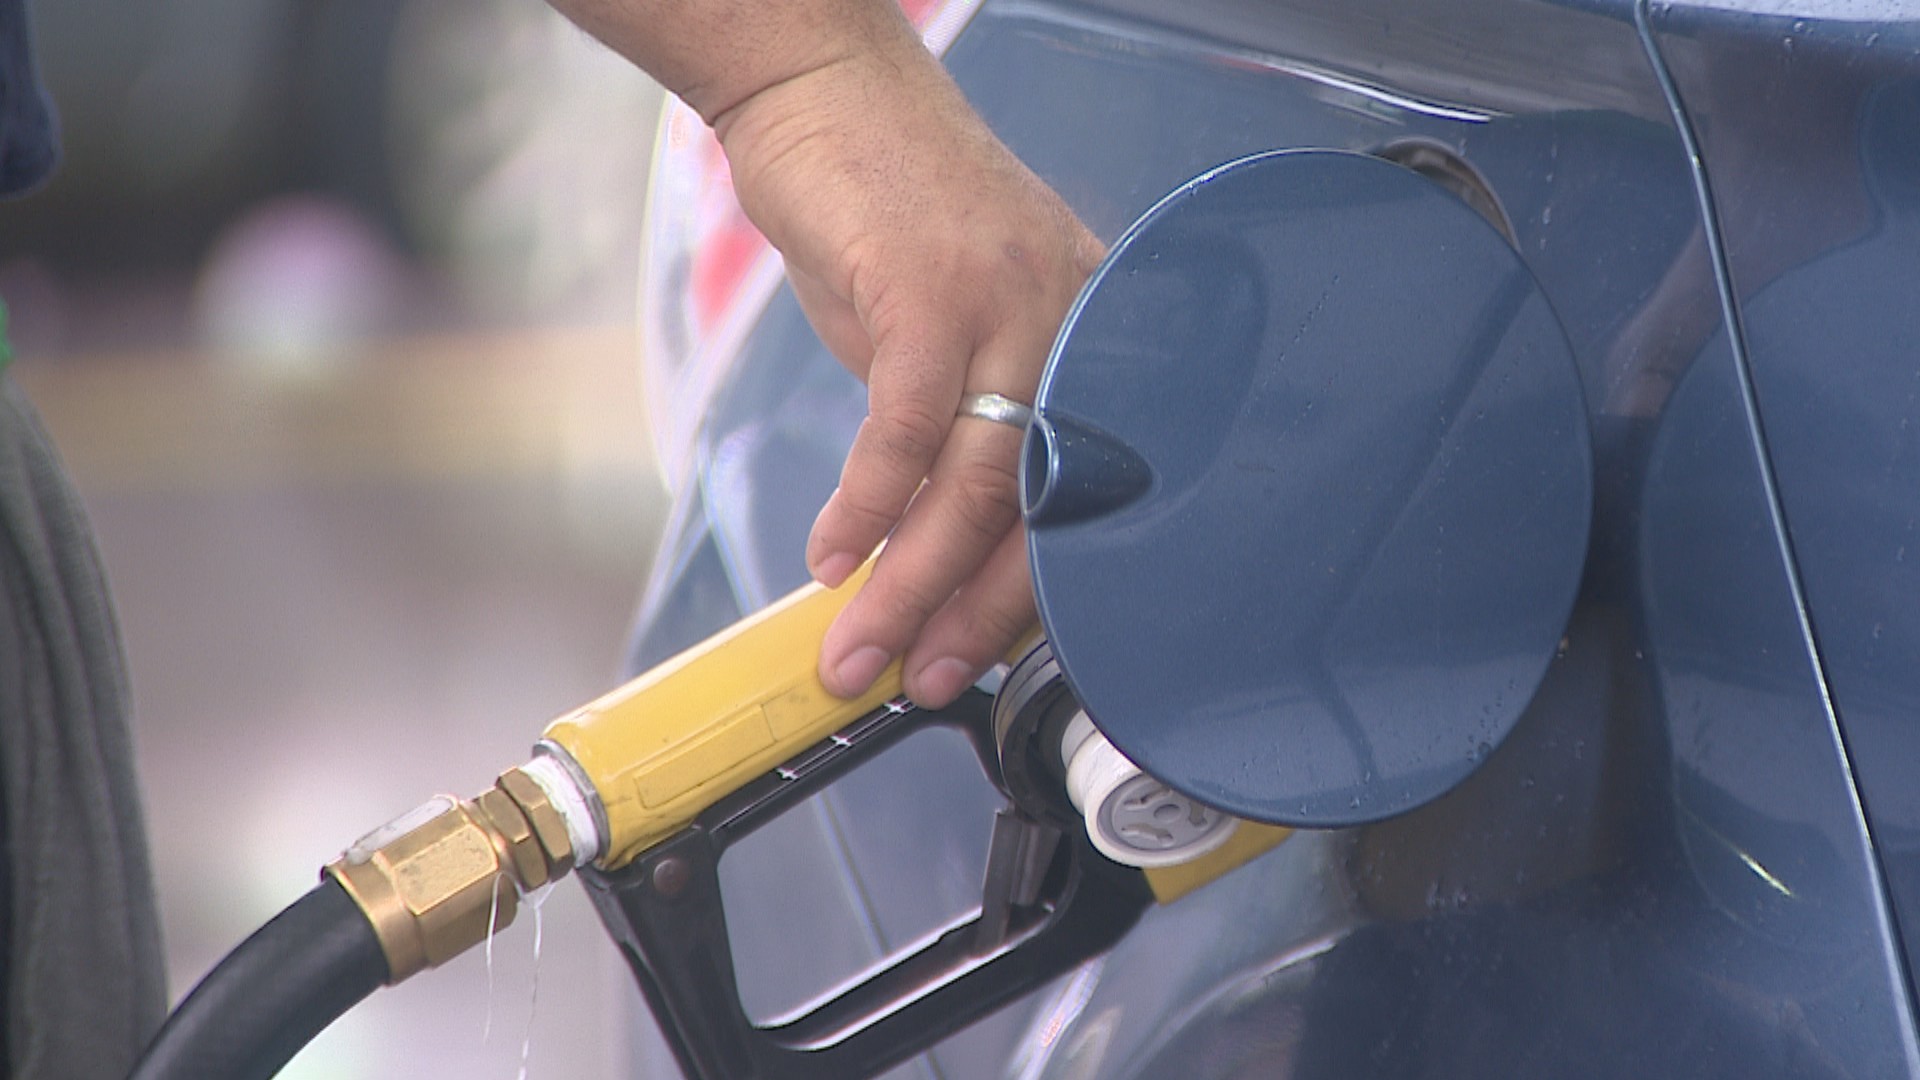 Preço médio da gasolina sobe 18 centavos no RS após reajuste; diesel está mais caro, diz ANP